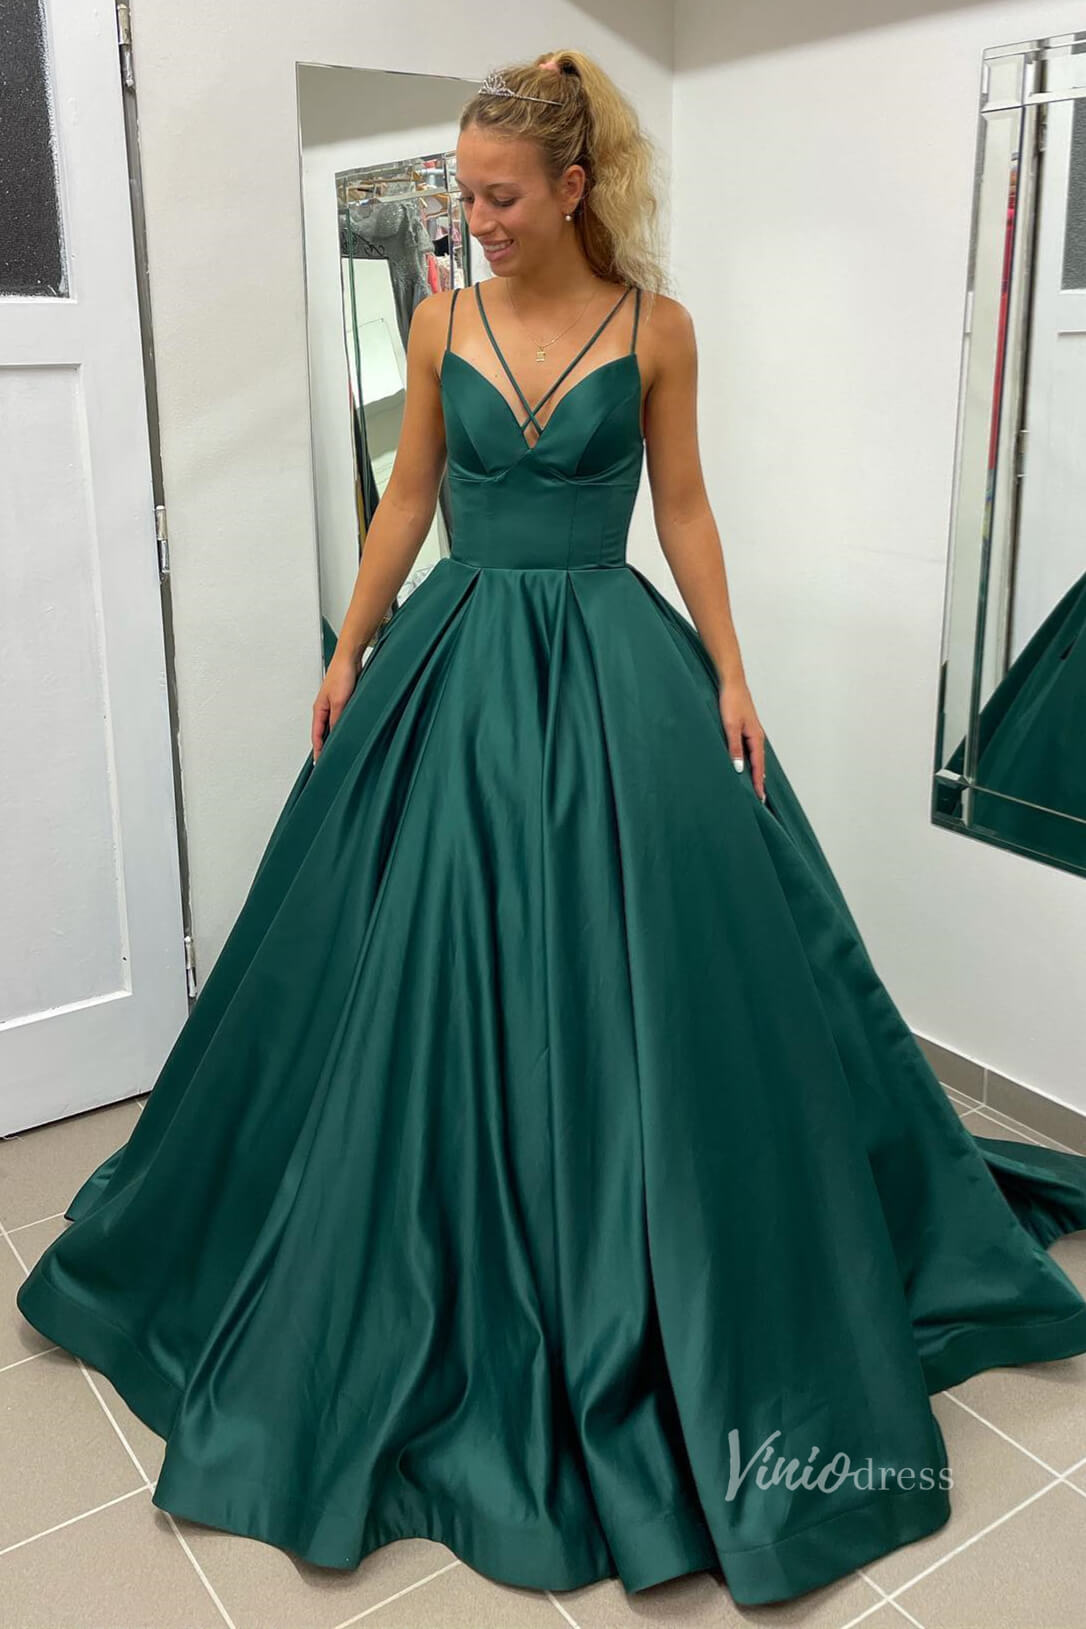 Green Satin Cheap Prom Dresses Spaghetti Strap Corset Back FD3992-prom dresses-Viniodress-Green-Custom Size-Viniodress